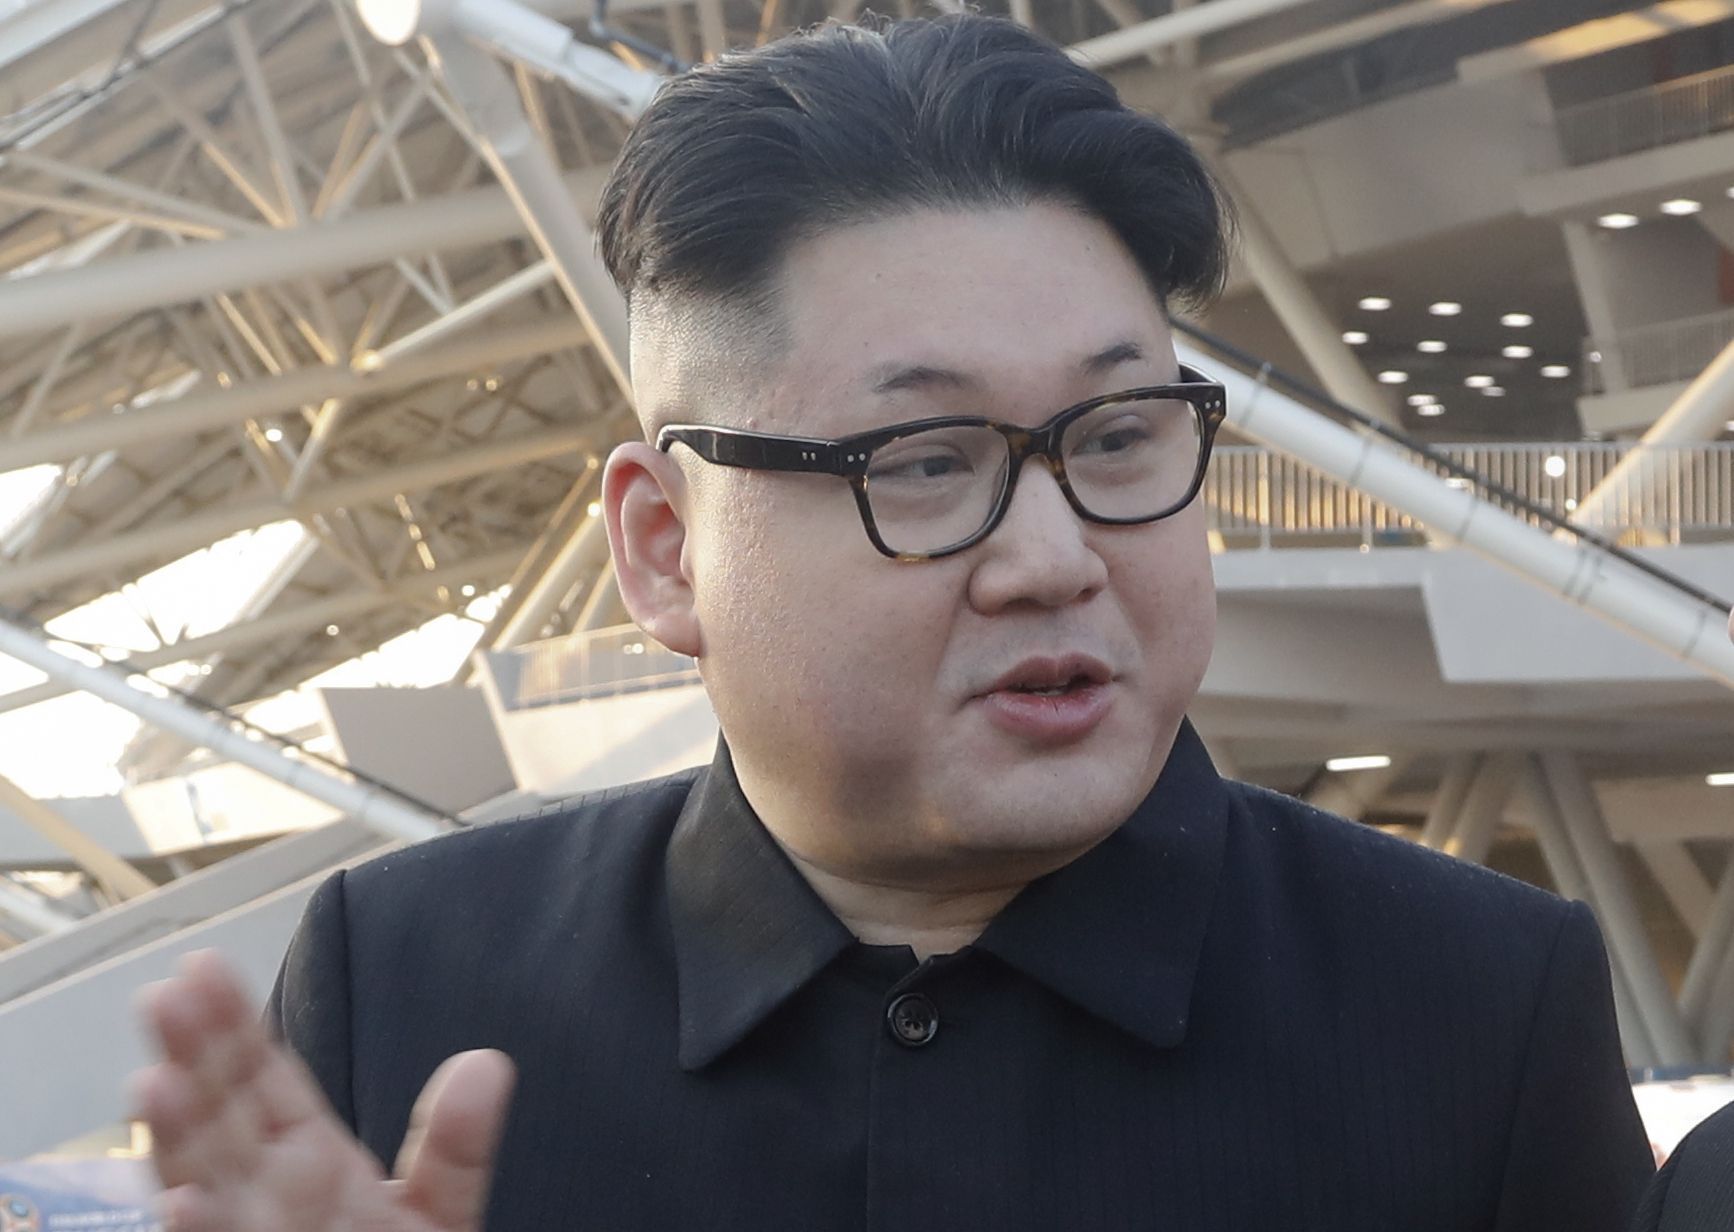 Това е първата визита на Ким Чен-ун в обект за военни тестове след среща му с Доналд Тръмп  през юни